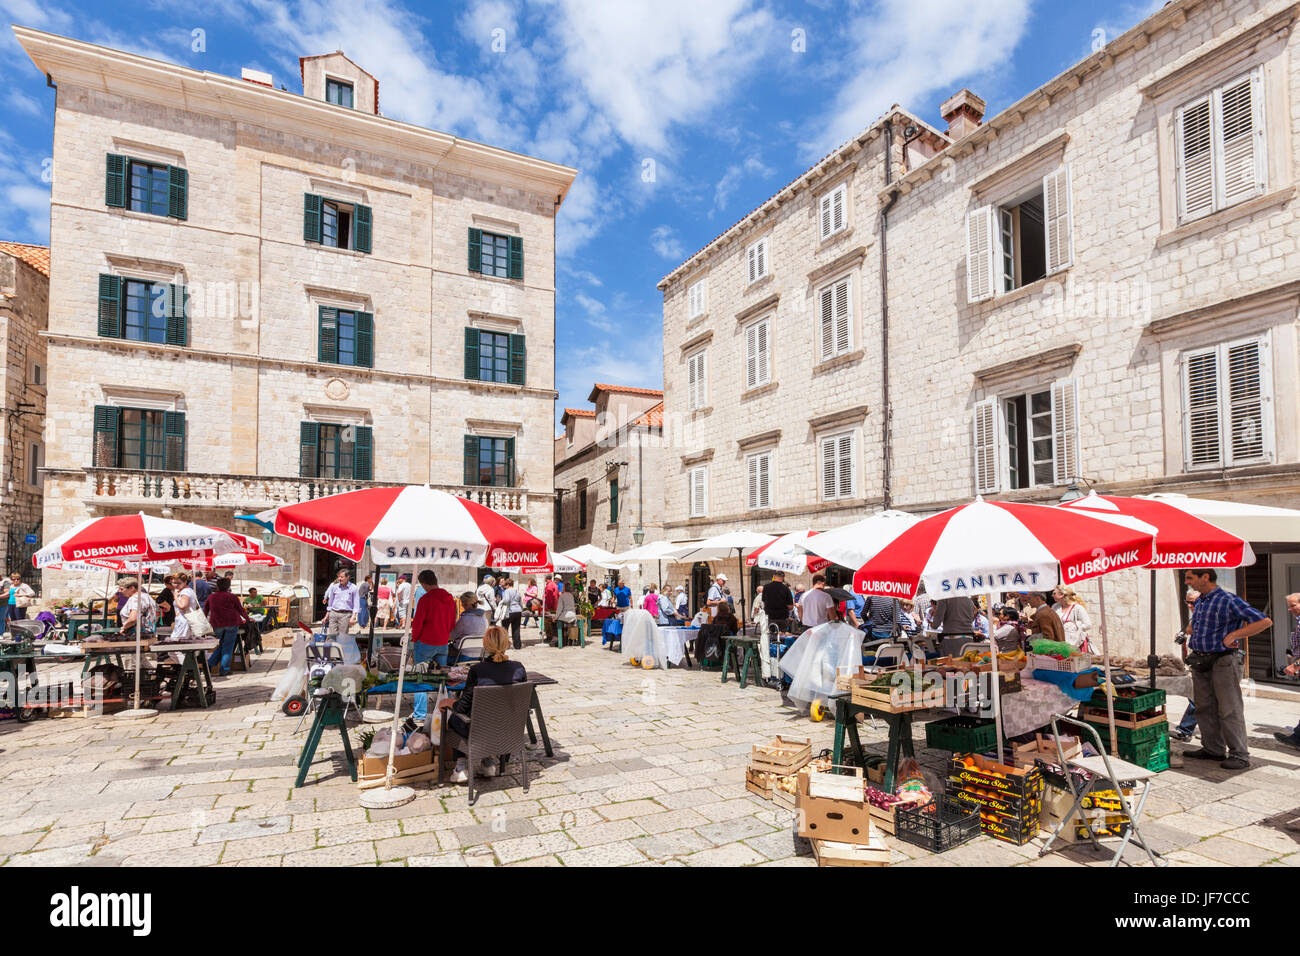 Dubrovnik Kroatien dalmatinische Küste Handwerk Markt und Souvenir Stände Freiverkehr Gundulic Platz, Dubrovnik Altstadt Dubrovnik, Dalmatien, Kroatien Stockfoto